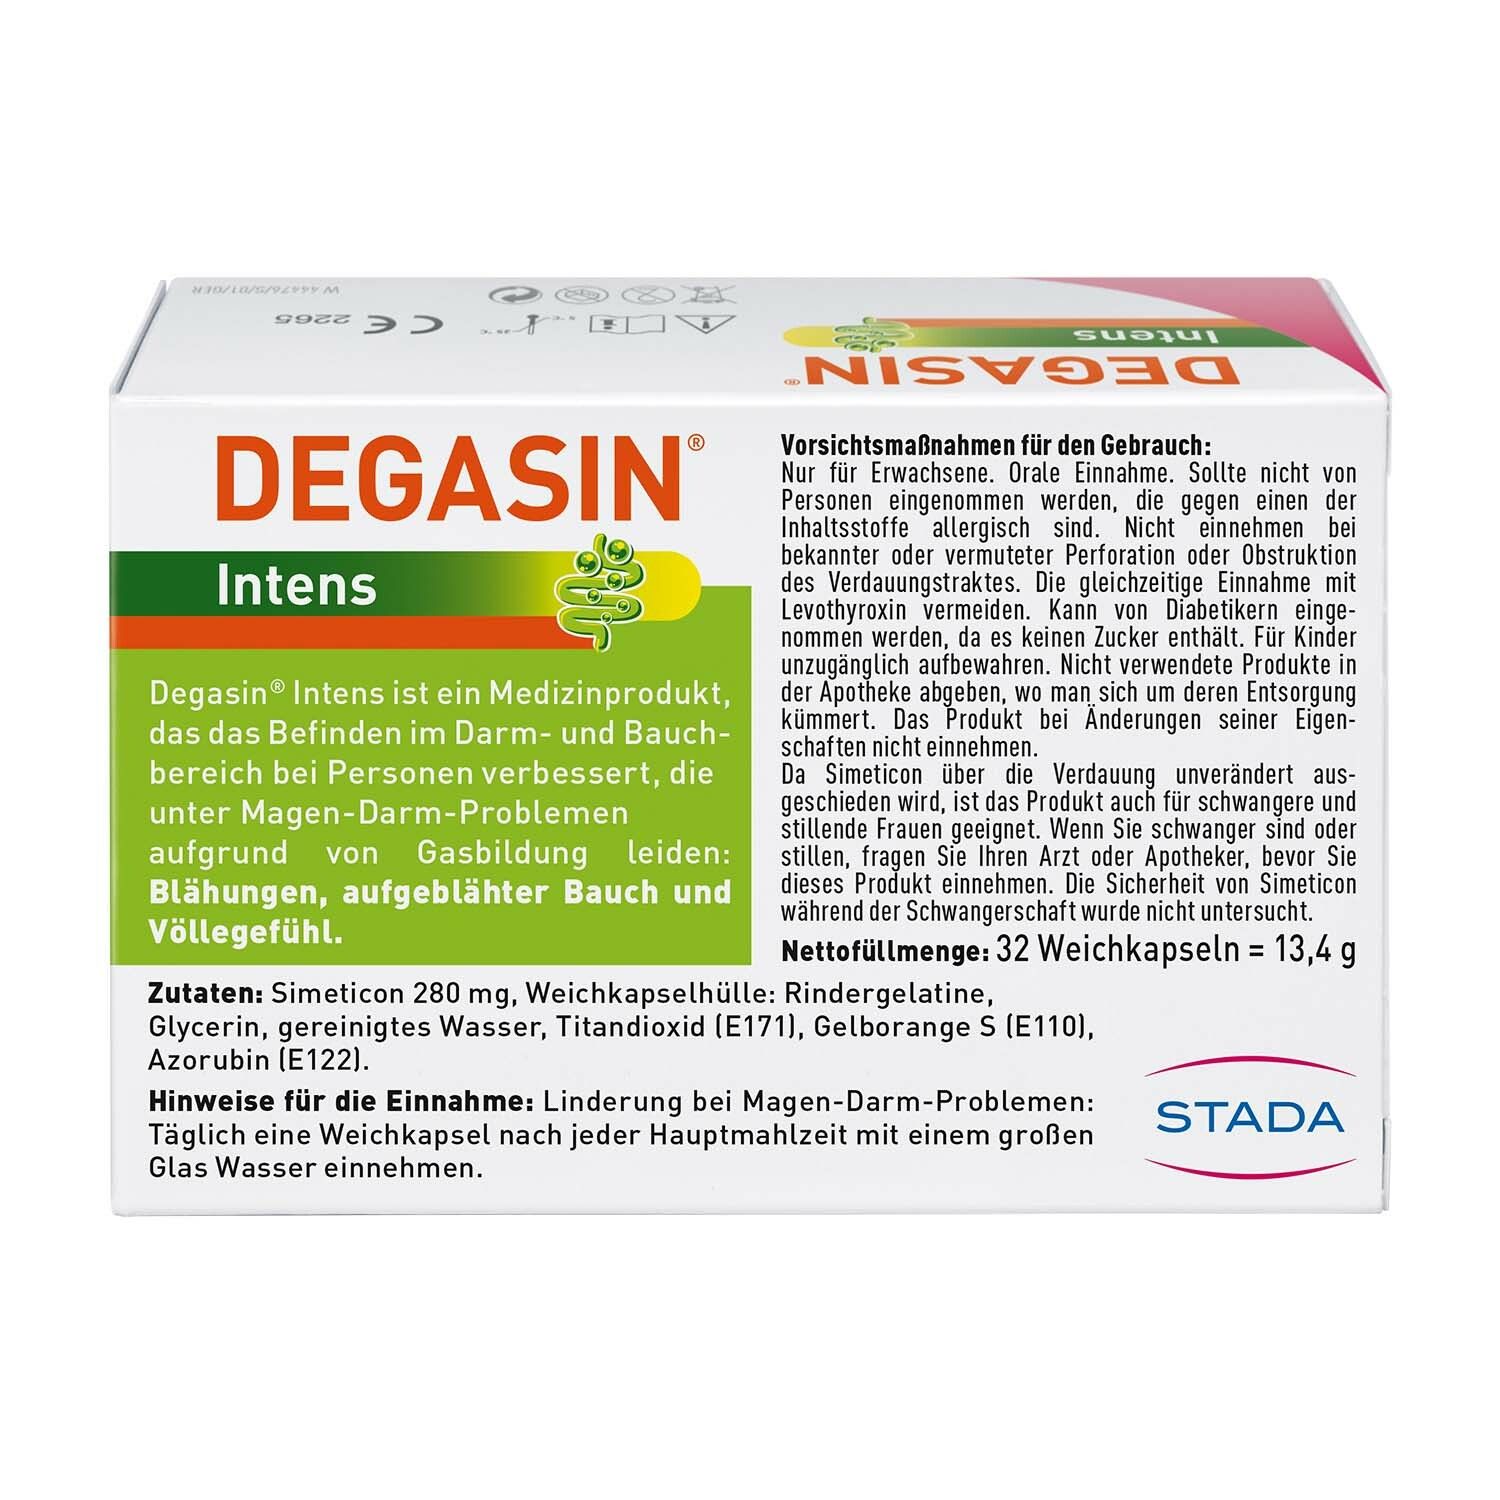 DEGASIN® Intens 280mg gegen Blähungen und Völlegefühl